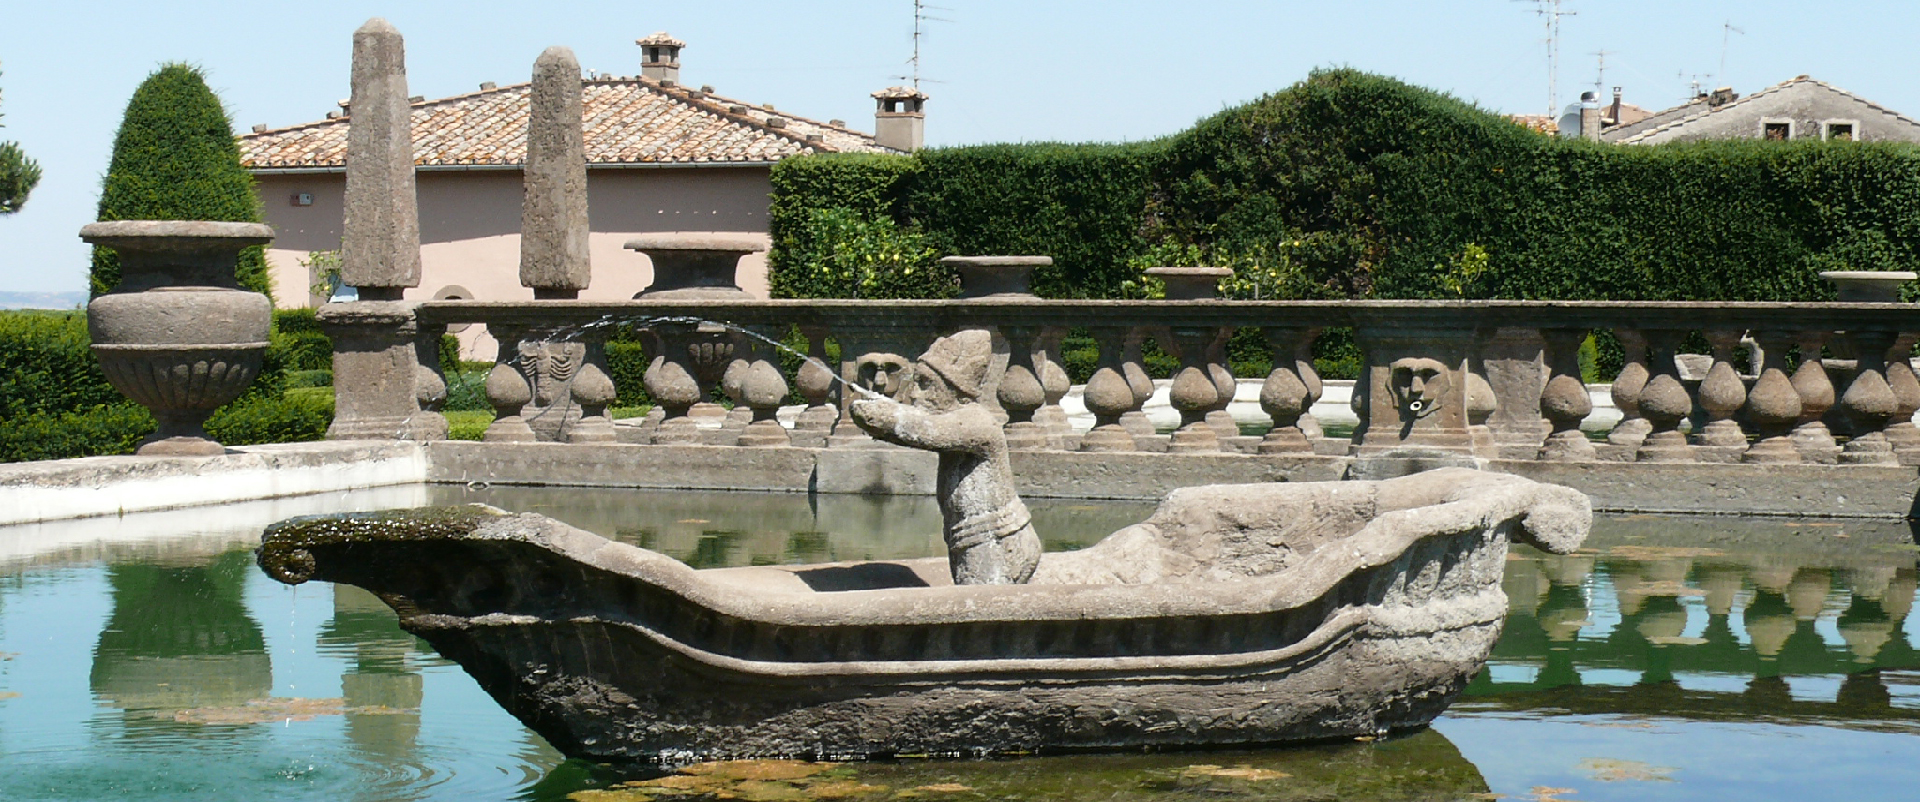 Villa Lante - VT - Un archibugiere nella Fontana dei Mori